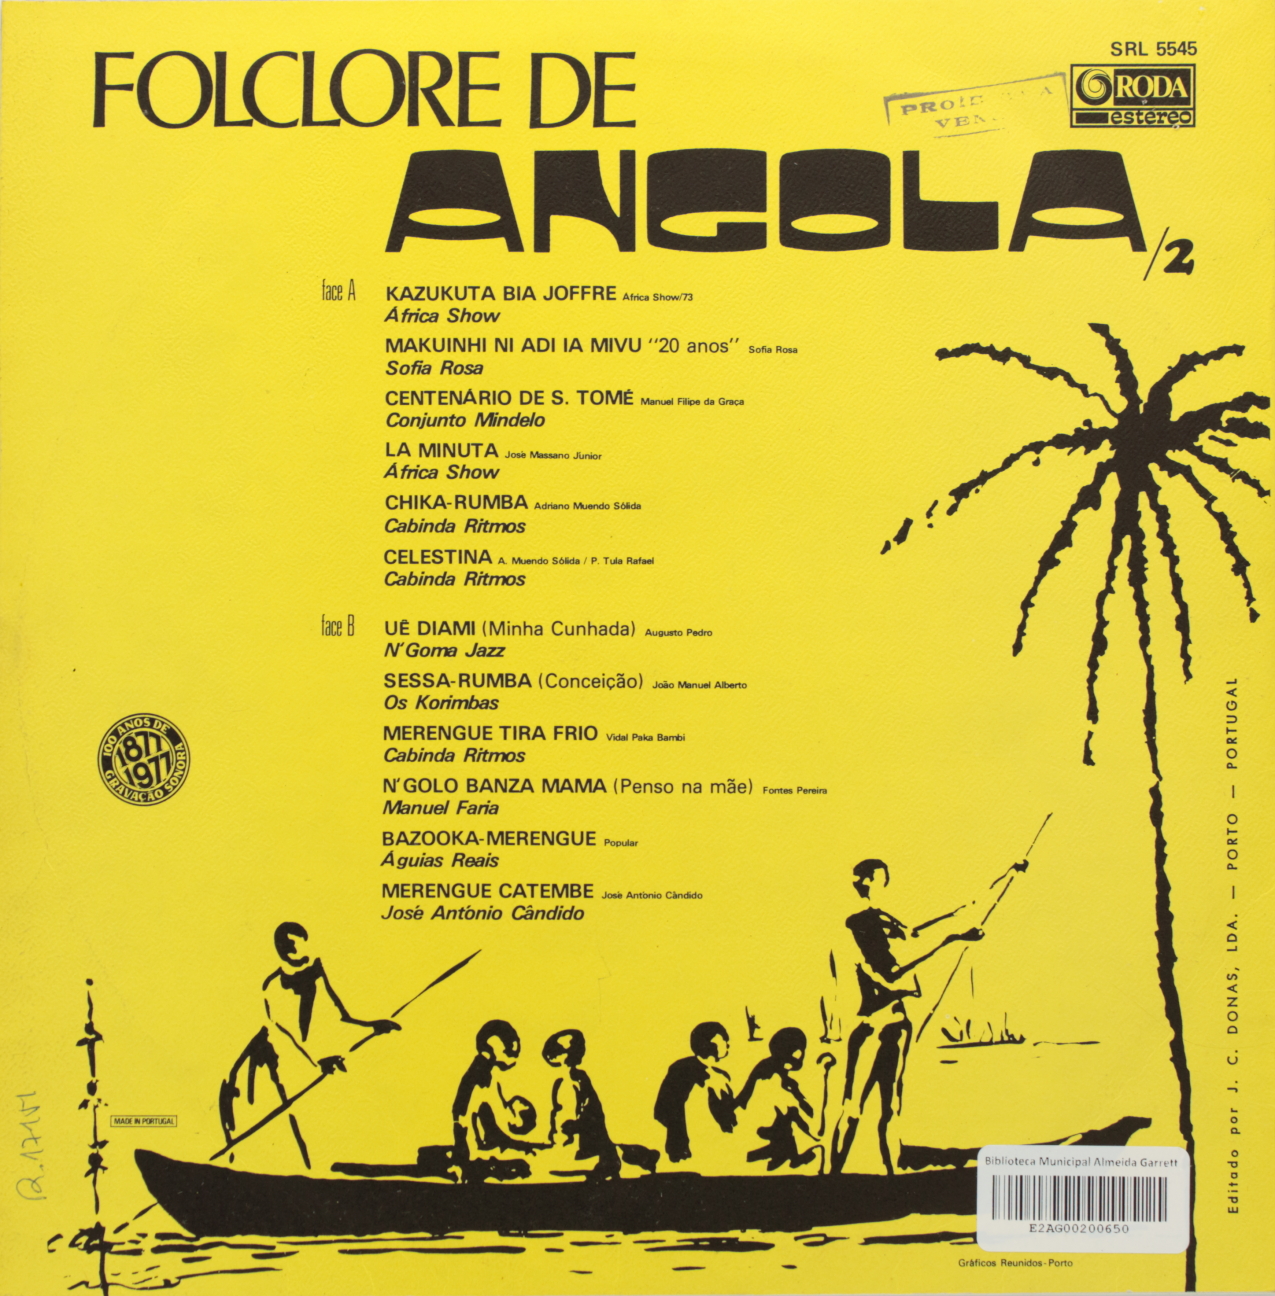 Folclore de Angola 2